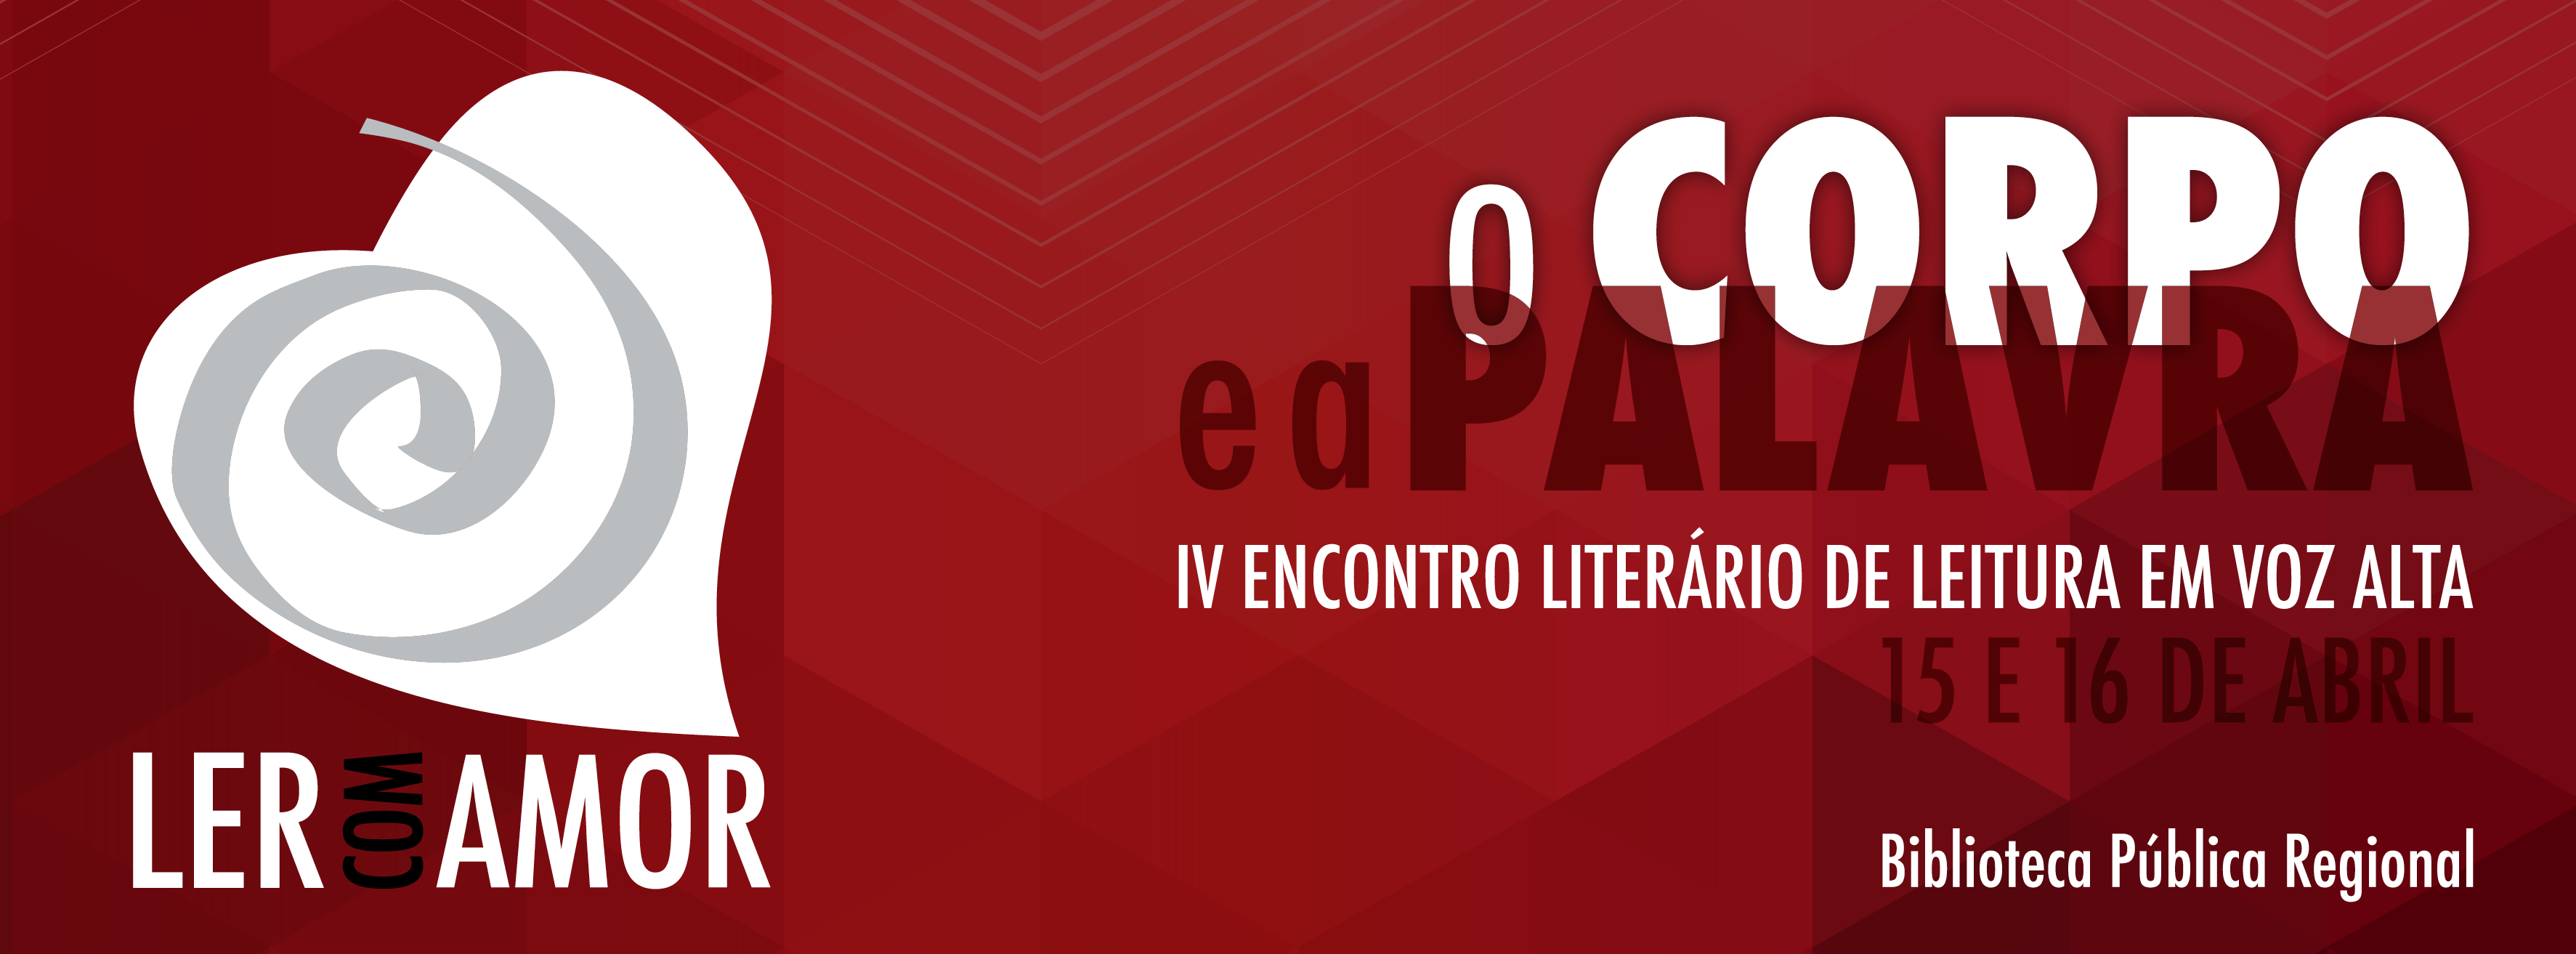 Inscrições para o IV Encontro Literário de Leitura em Voz Alta Ler com Amor: O CORPO E A PALAVRA